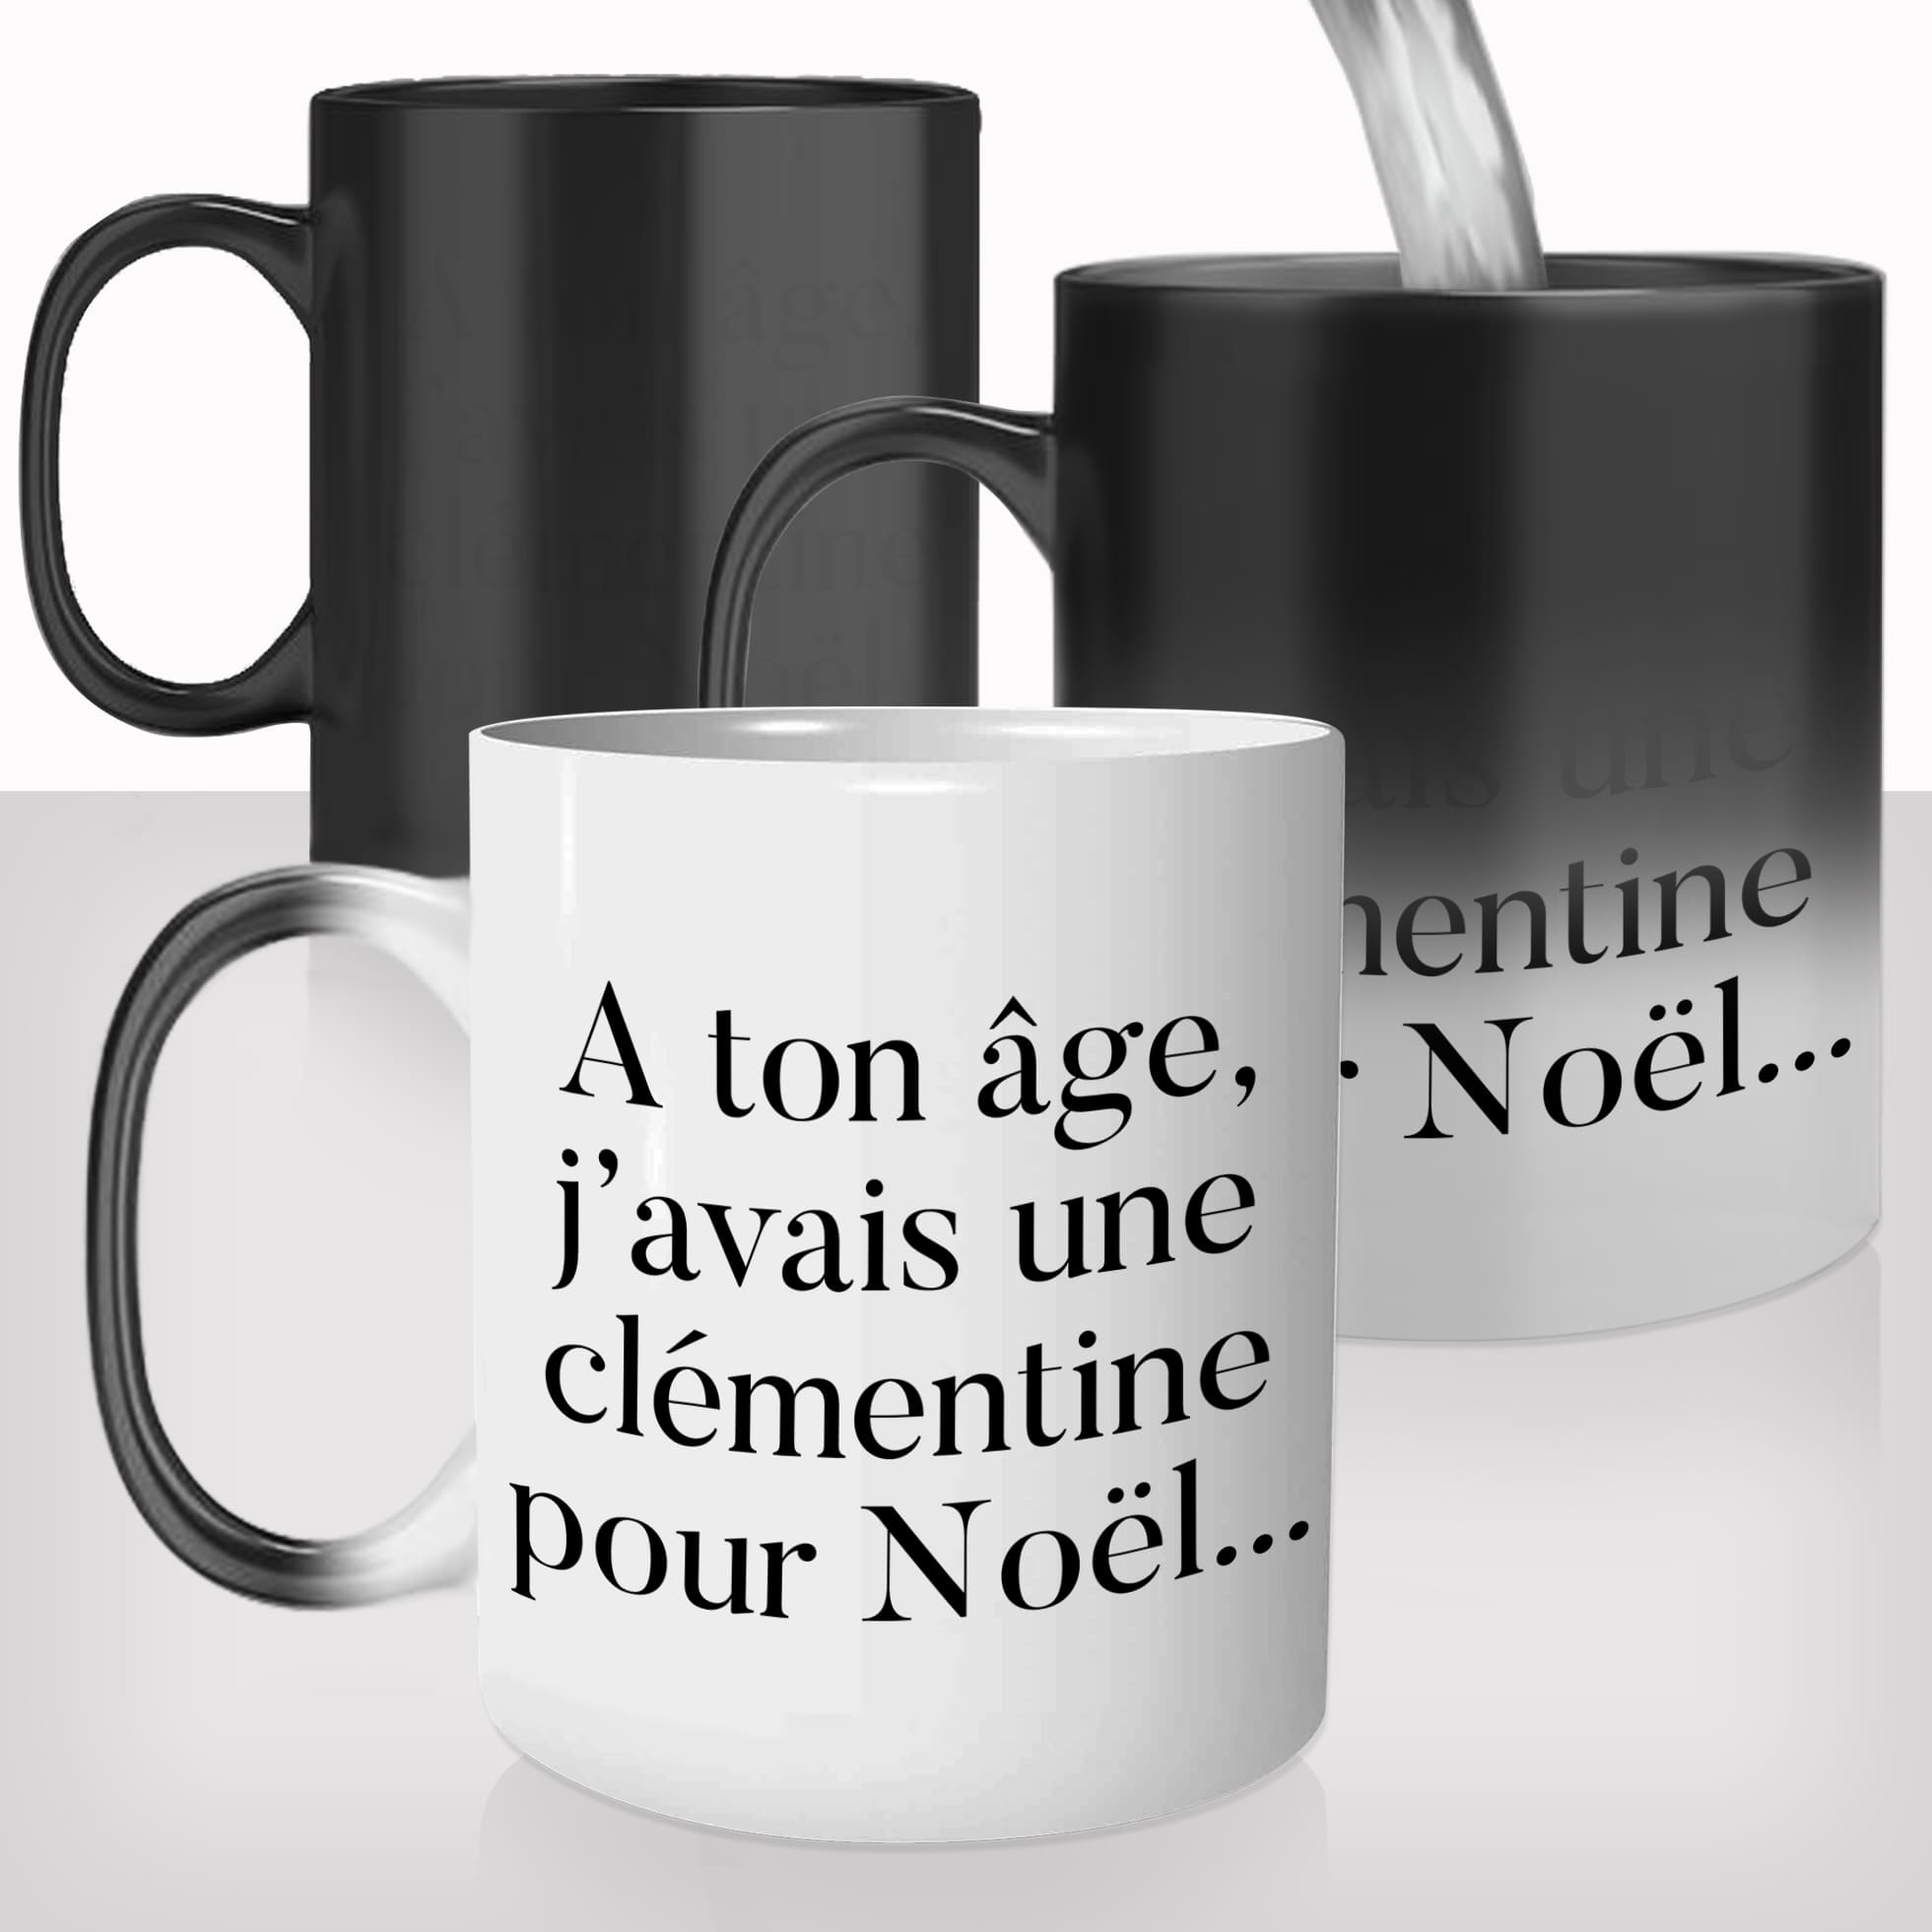 mug-magique-personnalisable-thermoreactif-tasse-thermique-Noël-clémentine-vieux-moi-a-ton-age-personnalisé-humour-fun-idée-cadeau-original